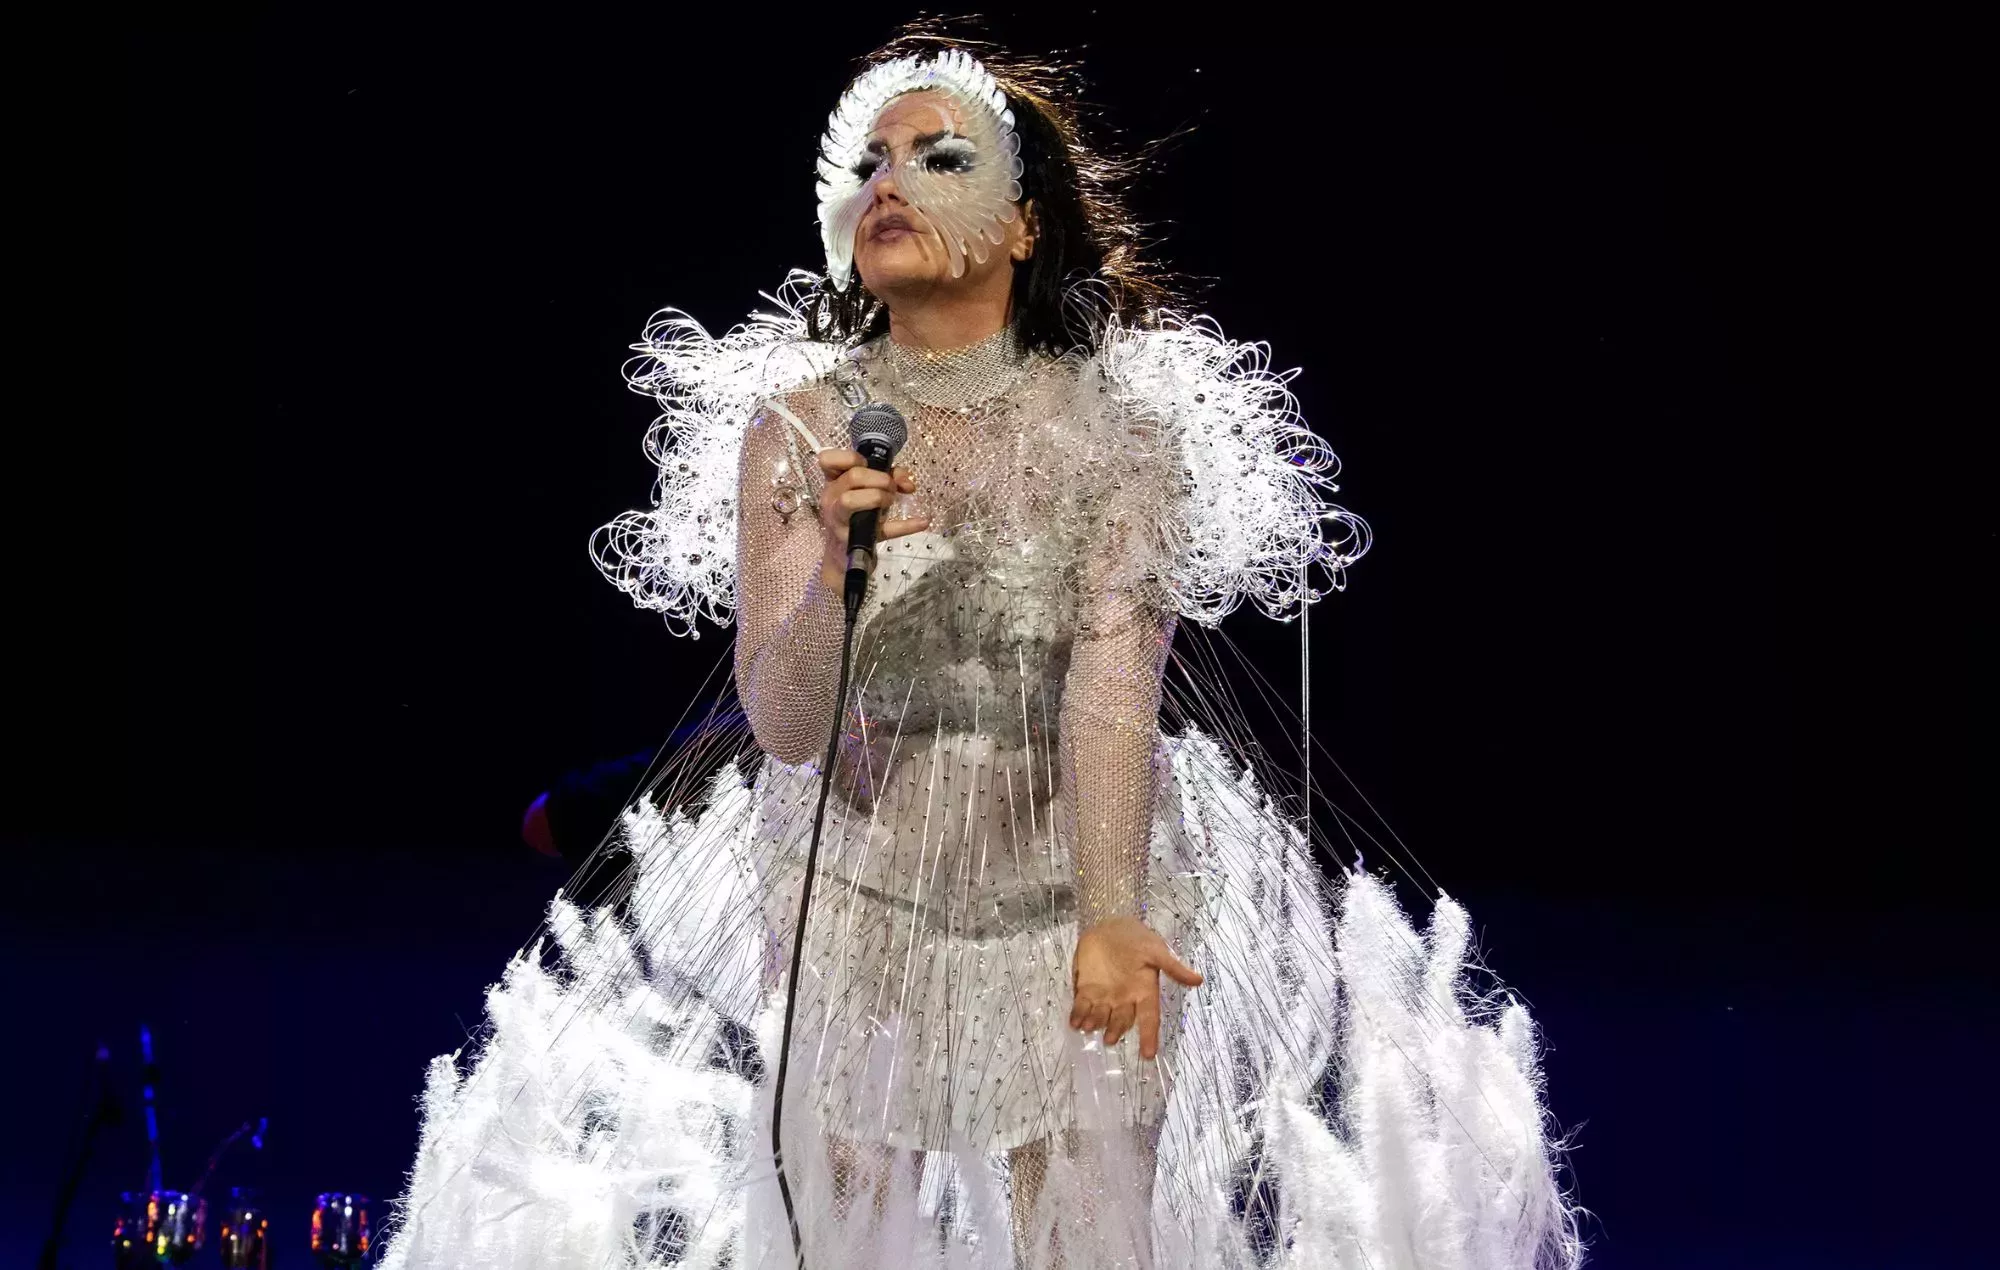 Björk gana el premio AIM al mejor intérprete en directo, tras conocerse las nominaciones finales